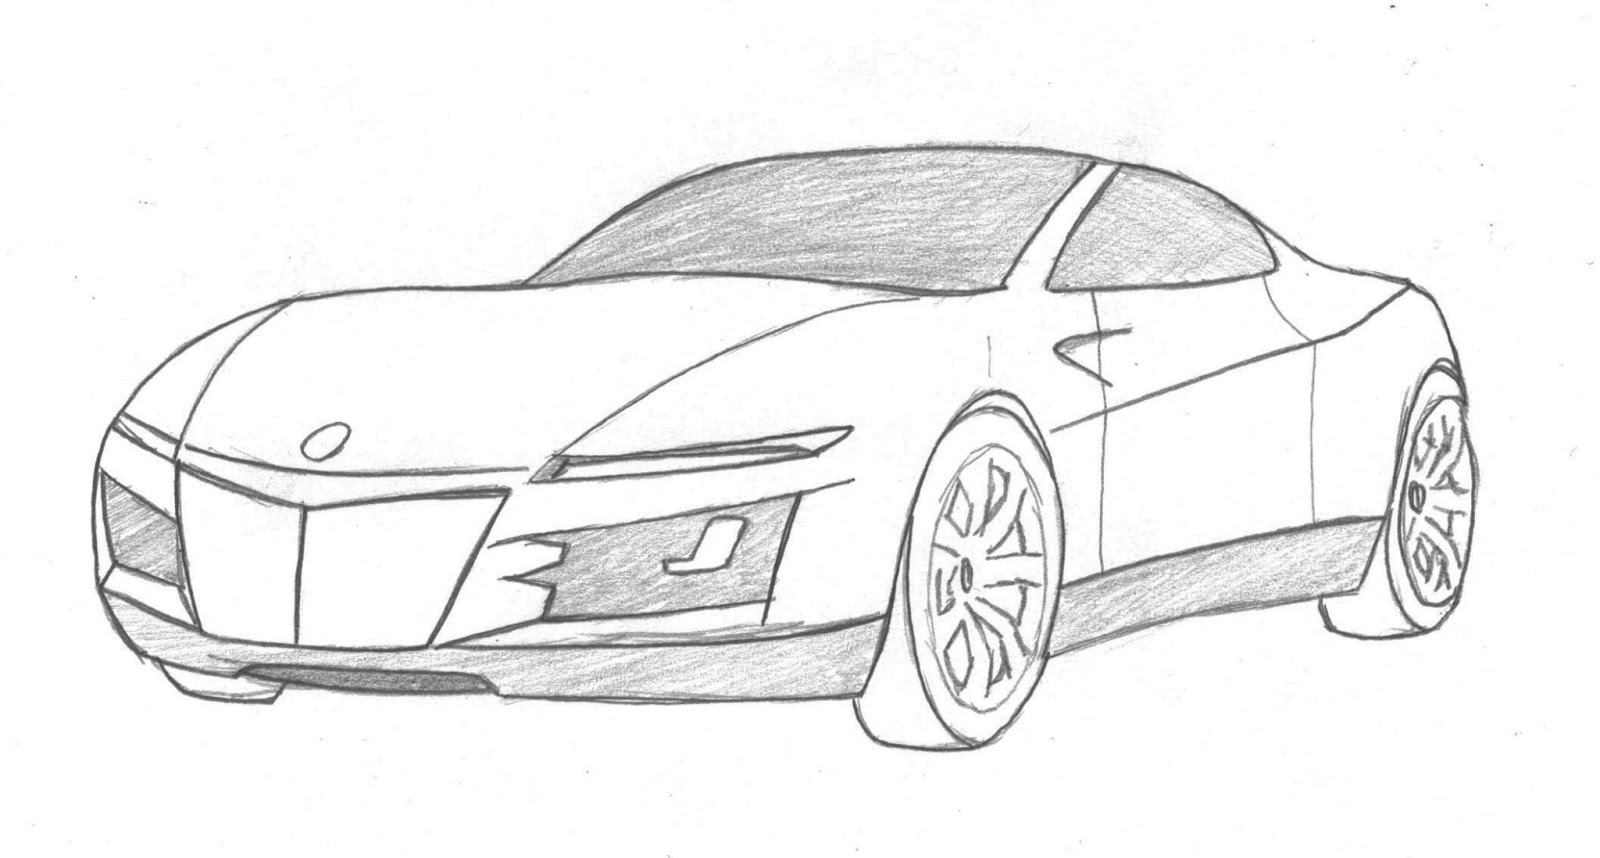 easy car pencil sketch drawing - Clip Art Library